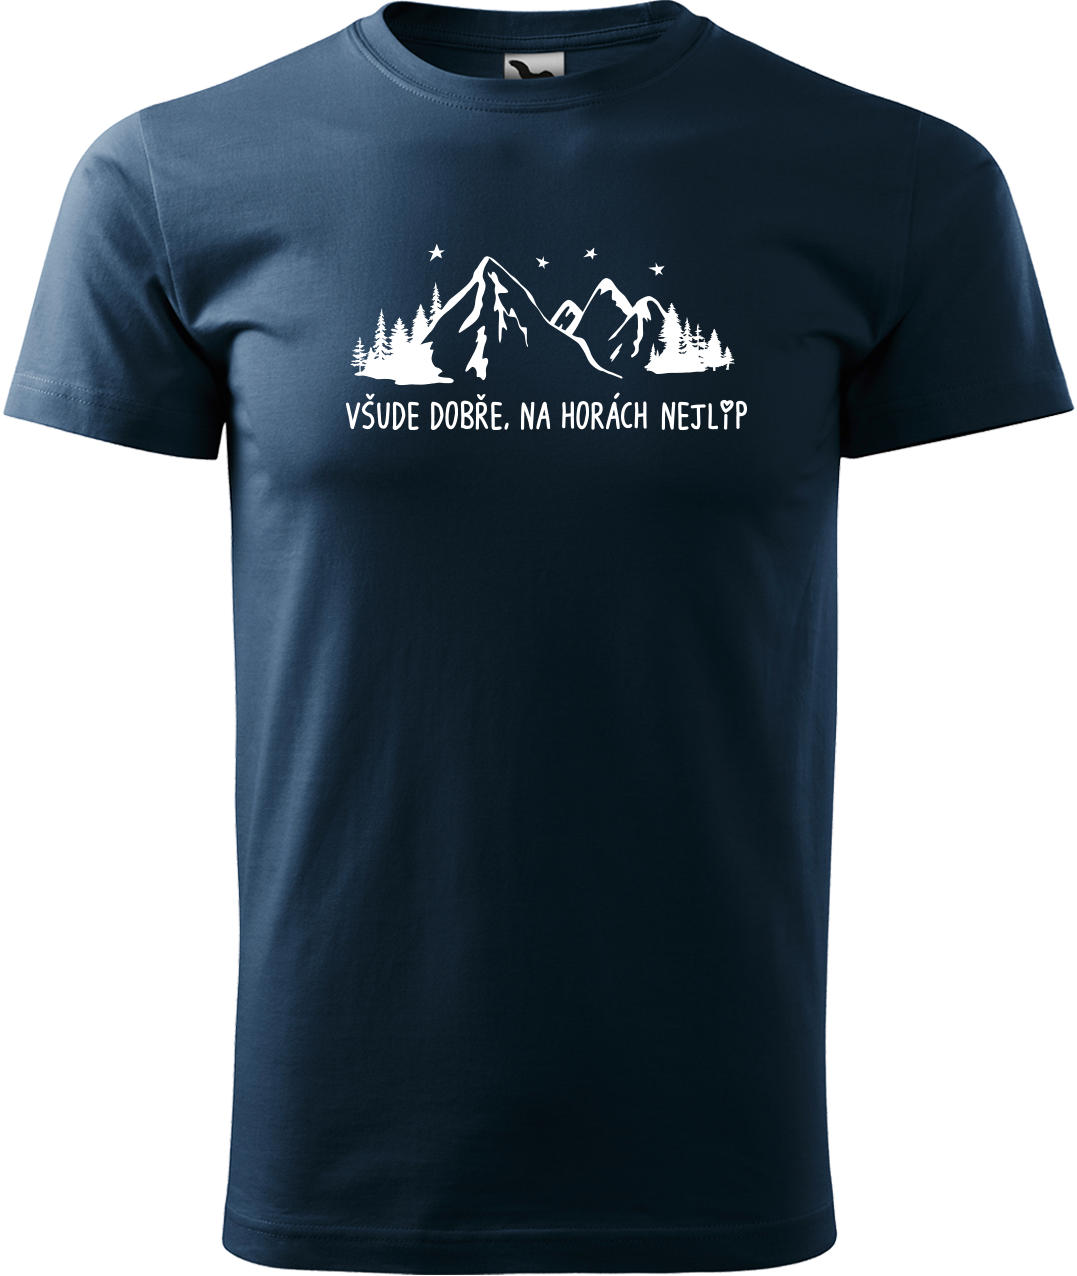 Pánské tričko na hory - Všude dobře, na horách nejlíp Velikost: L, Barva: Námořní modrá (02)